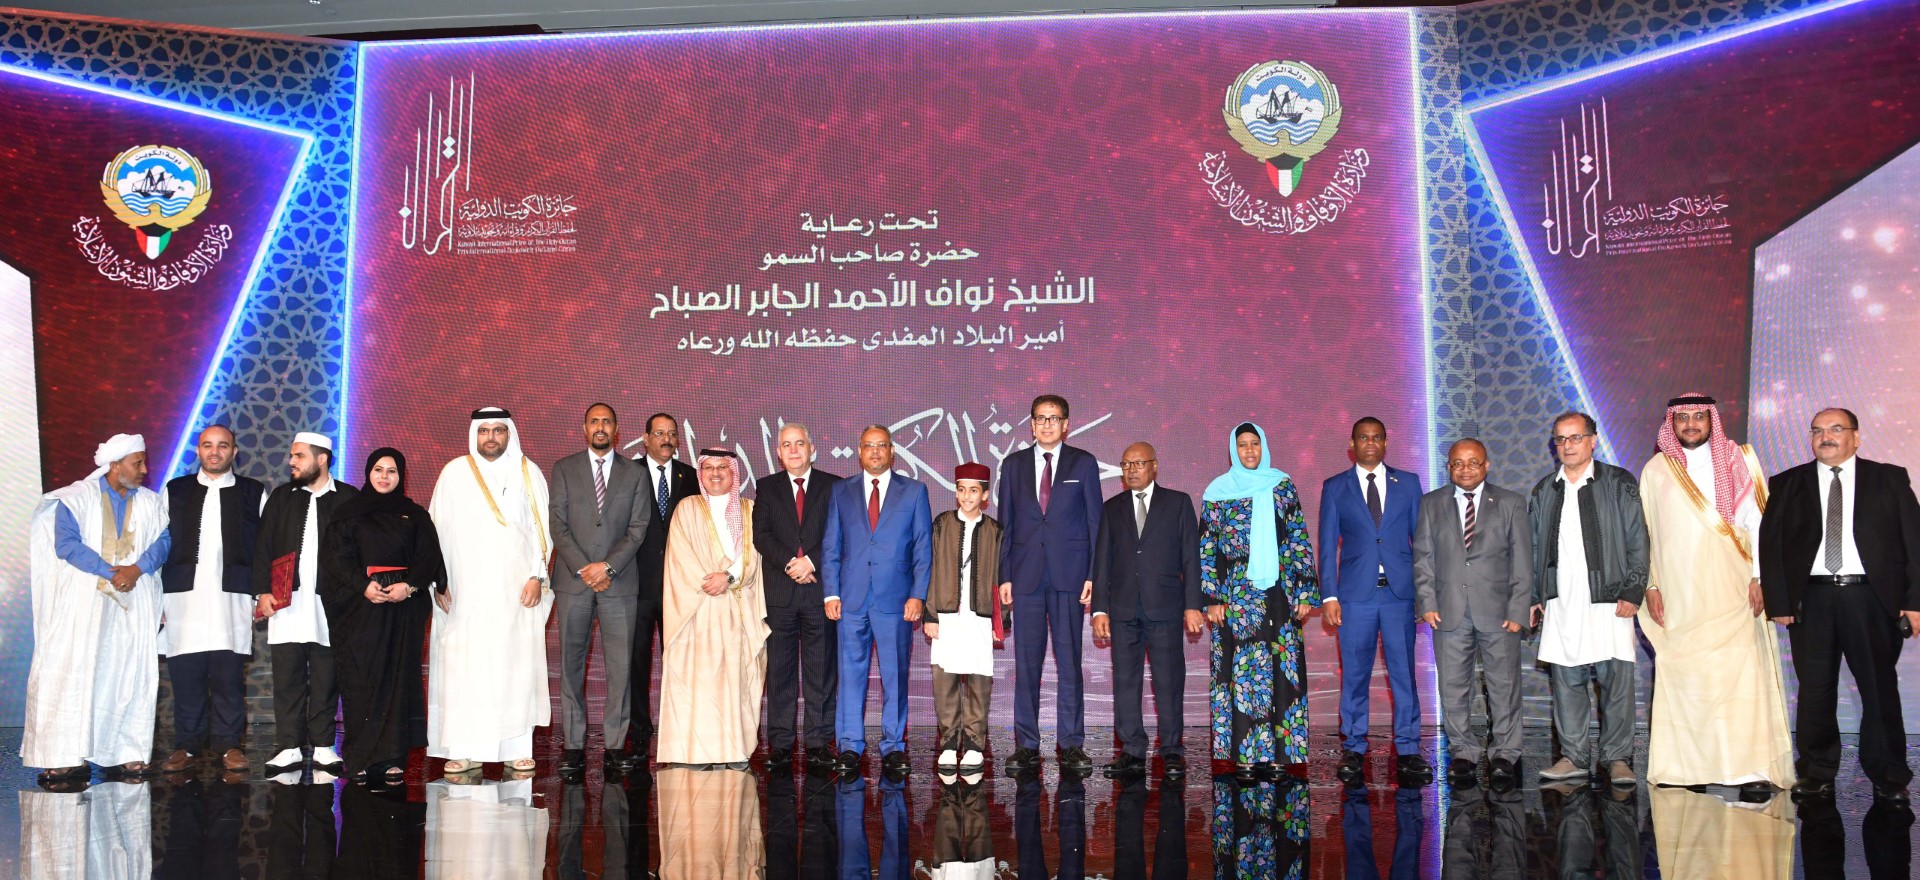 مشاركة جيبوتي في المسابقة الدولية لتلاوة وحفظ القرآن الكريم في الكويت